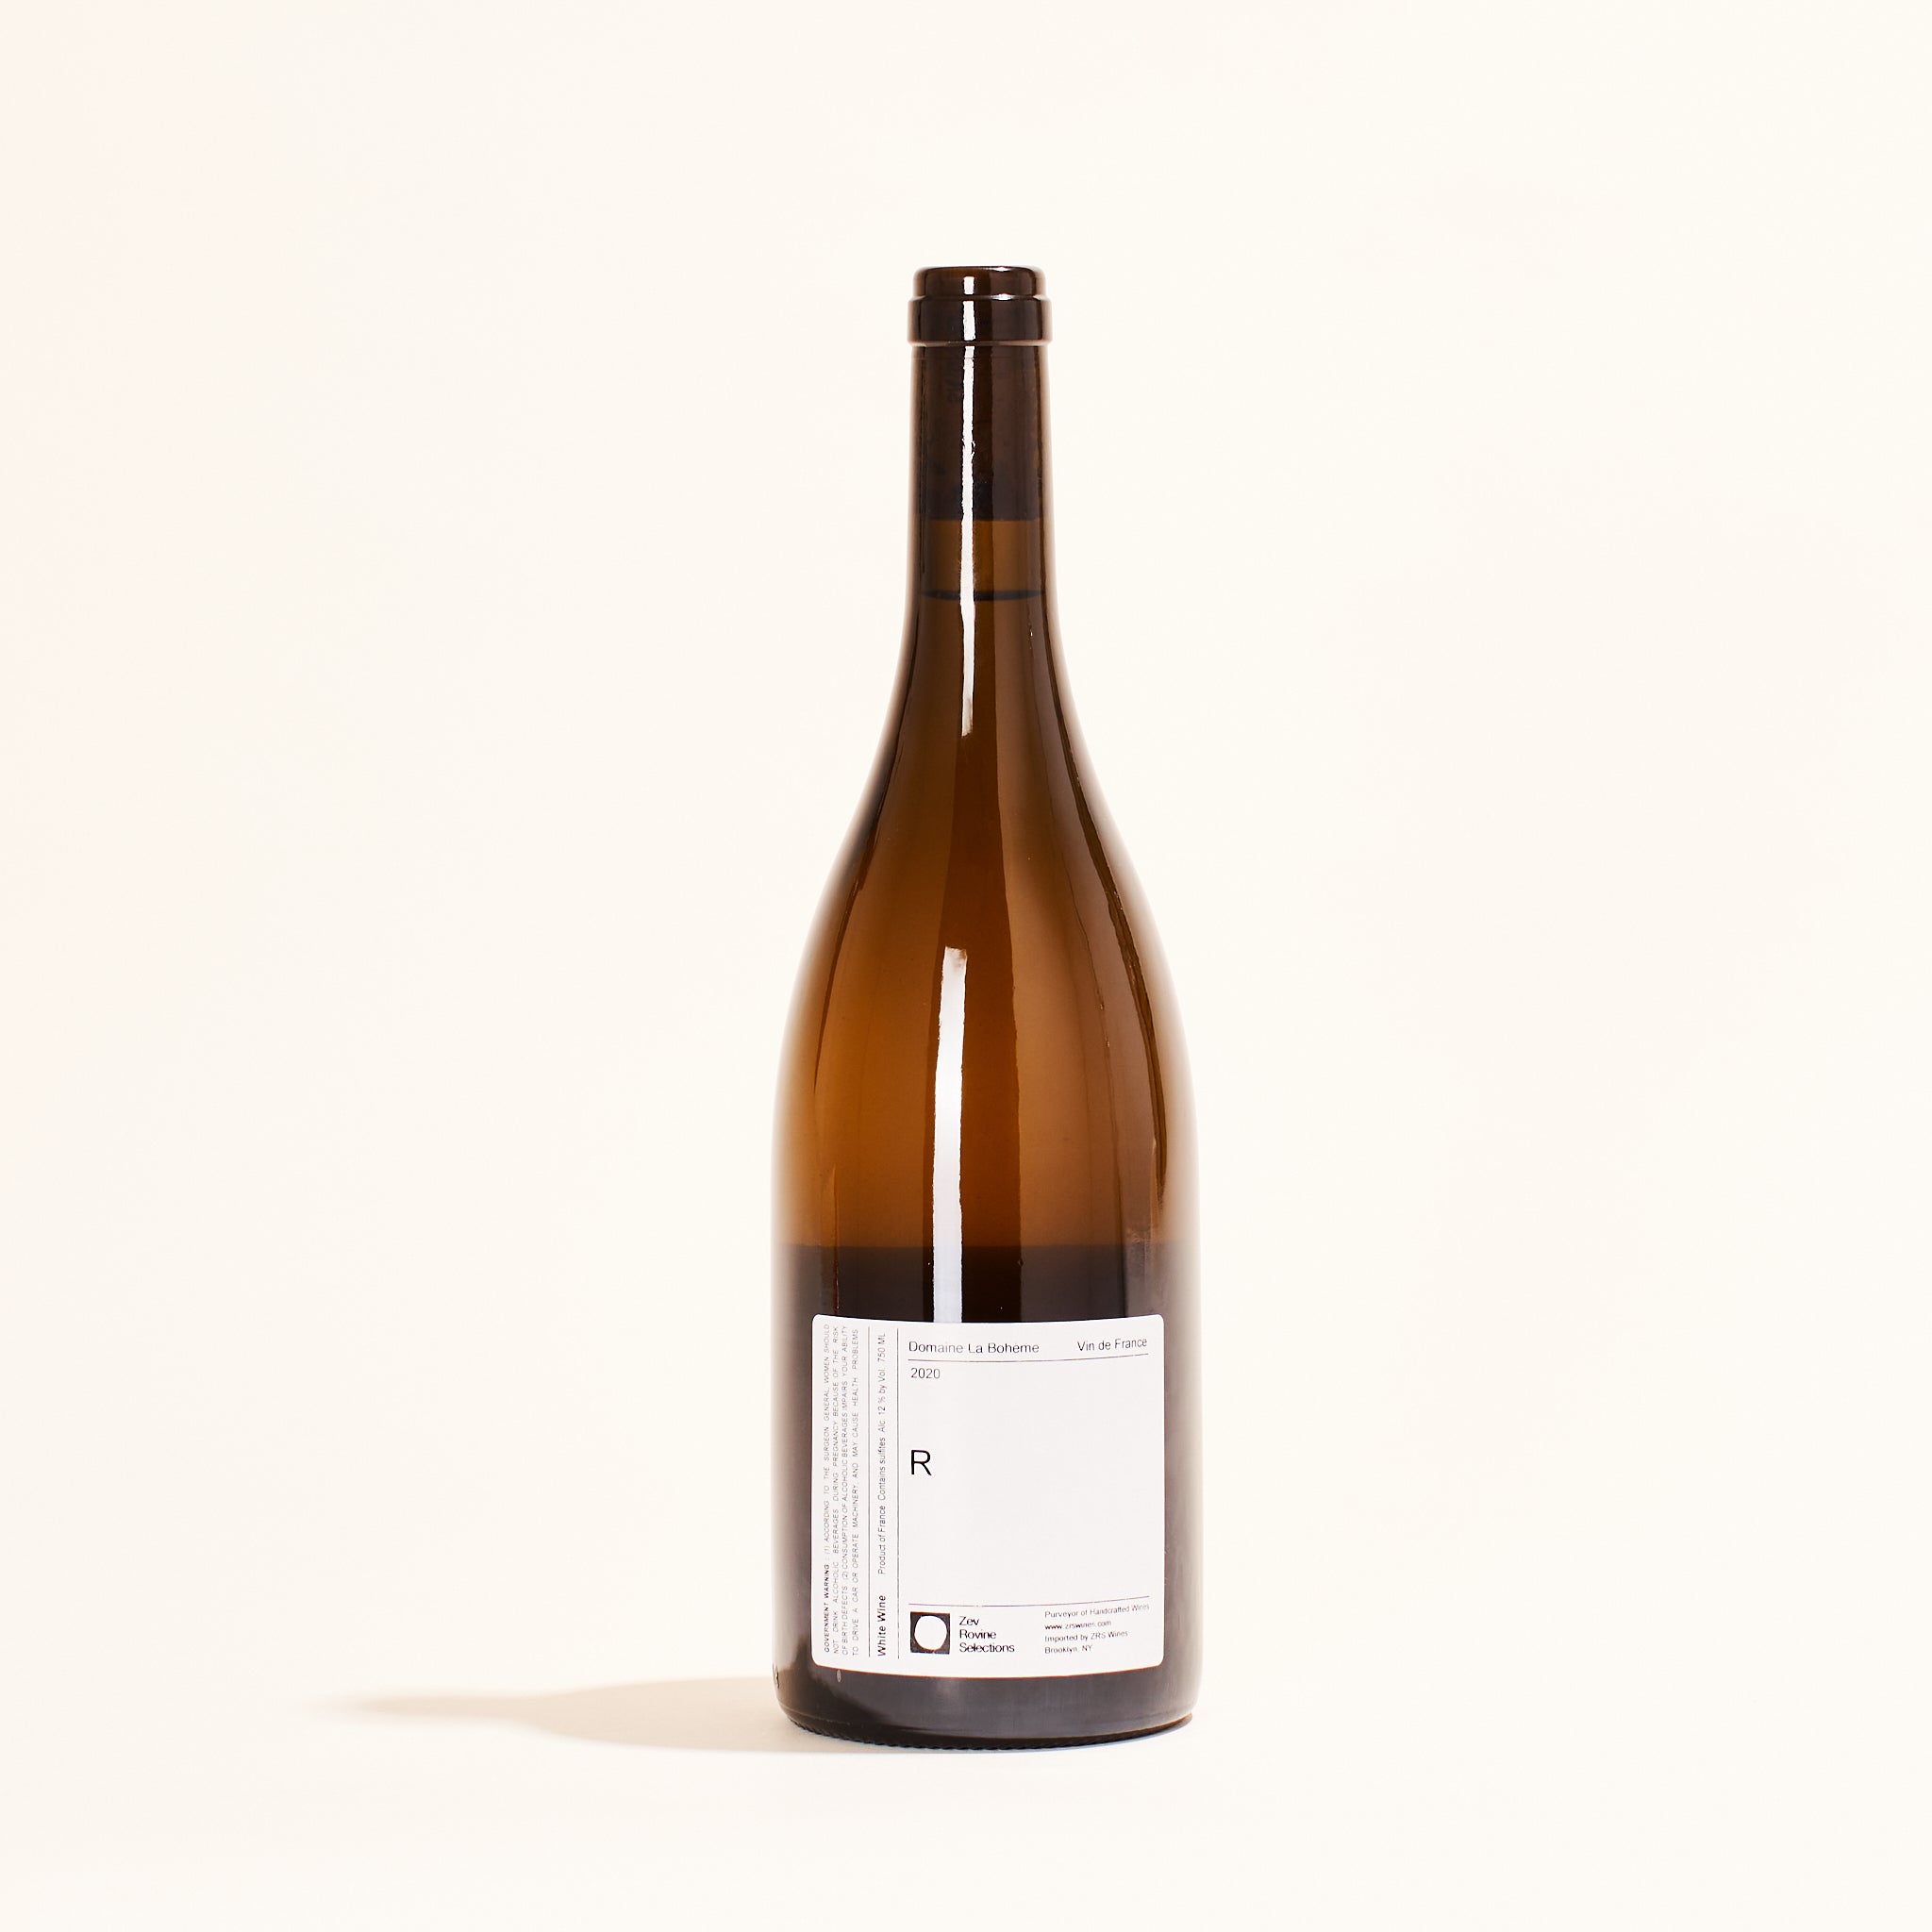 Domaine la Boheme &quot;R&quot; VDF Blanc riesling natural white wine Alsace France back label